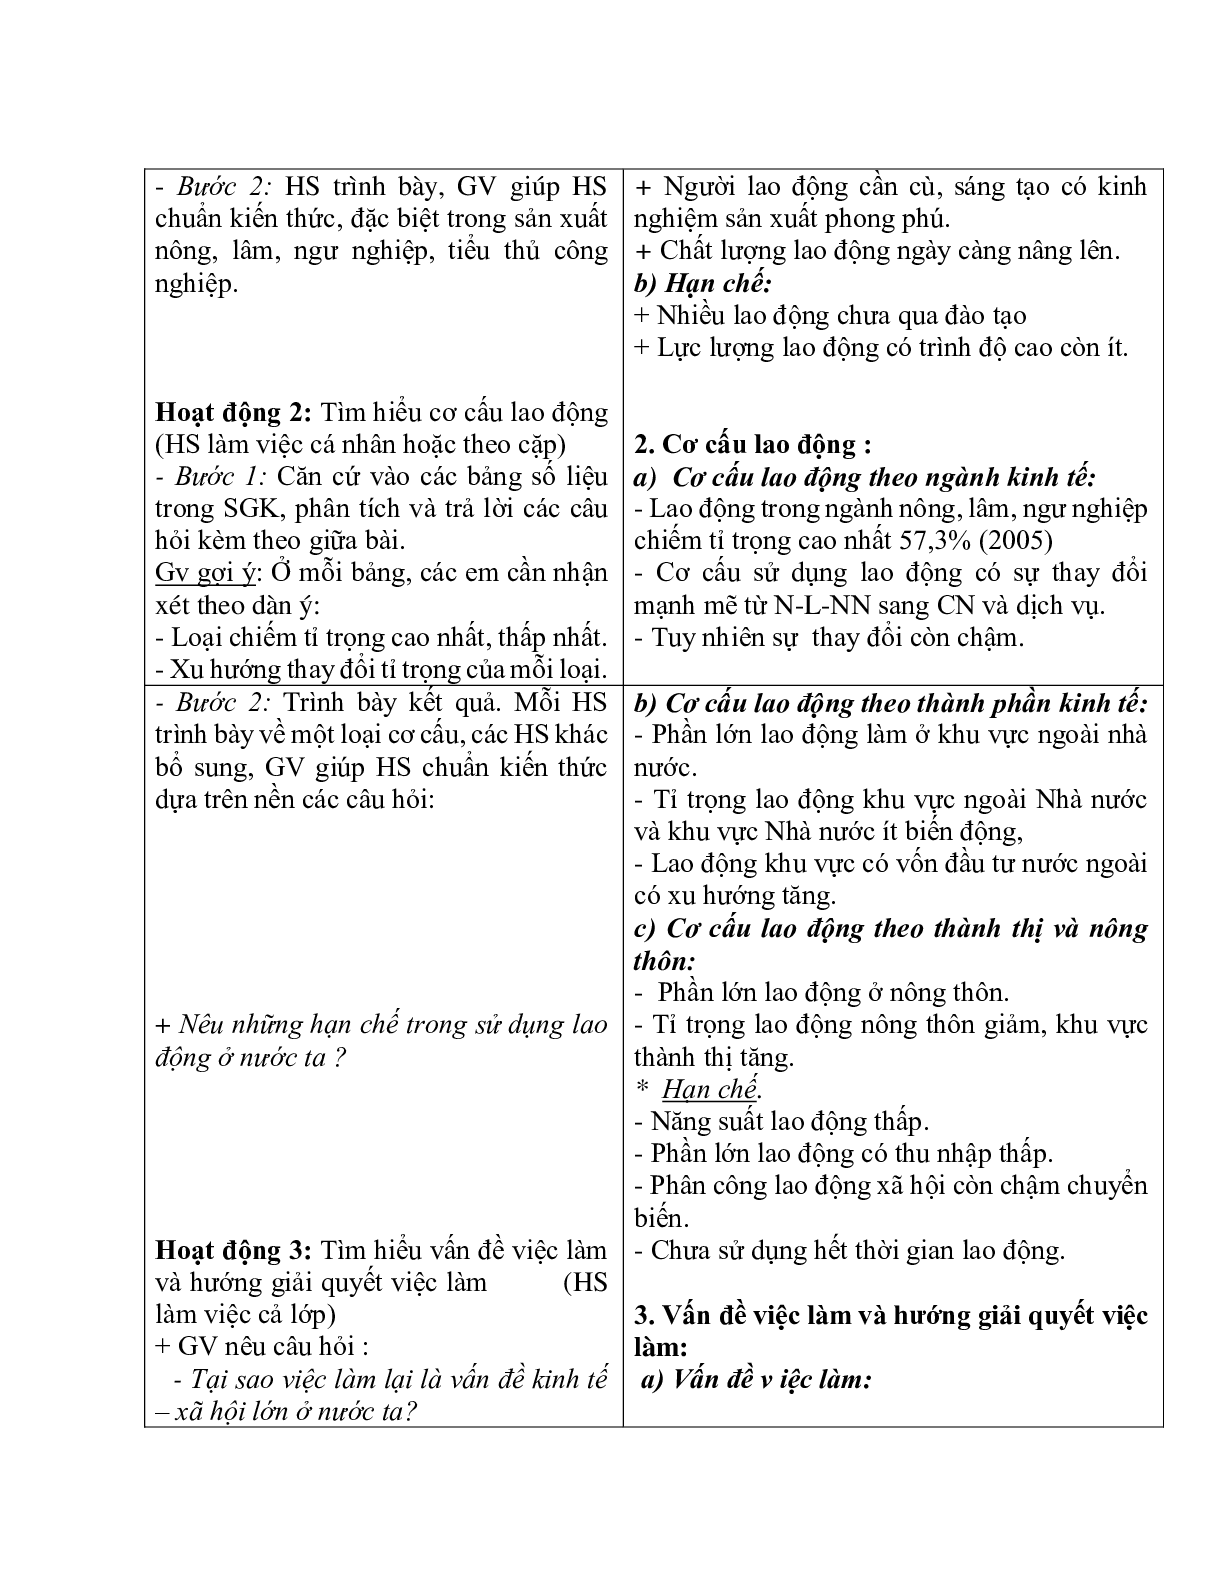 Giáo án Địa lí 12 Bài 17 lao động và việc làm mới nhất (trang 2)